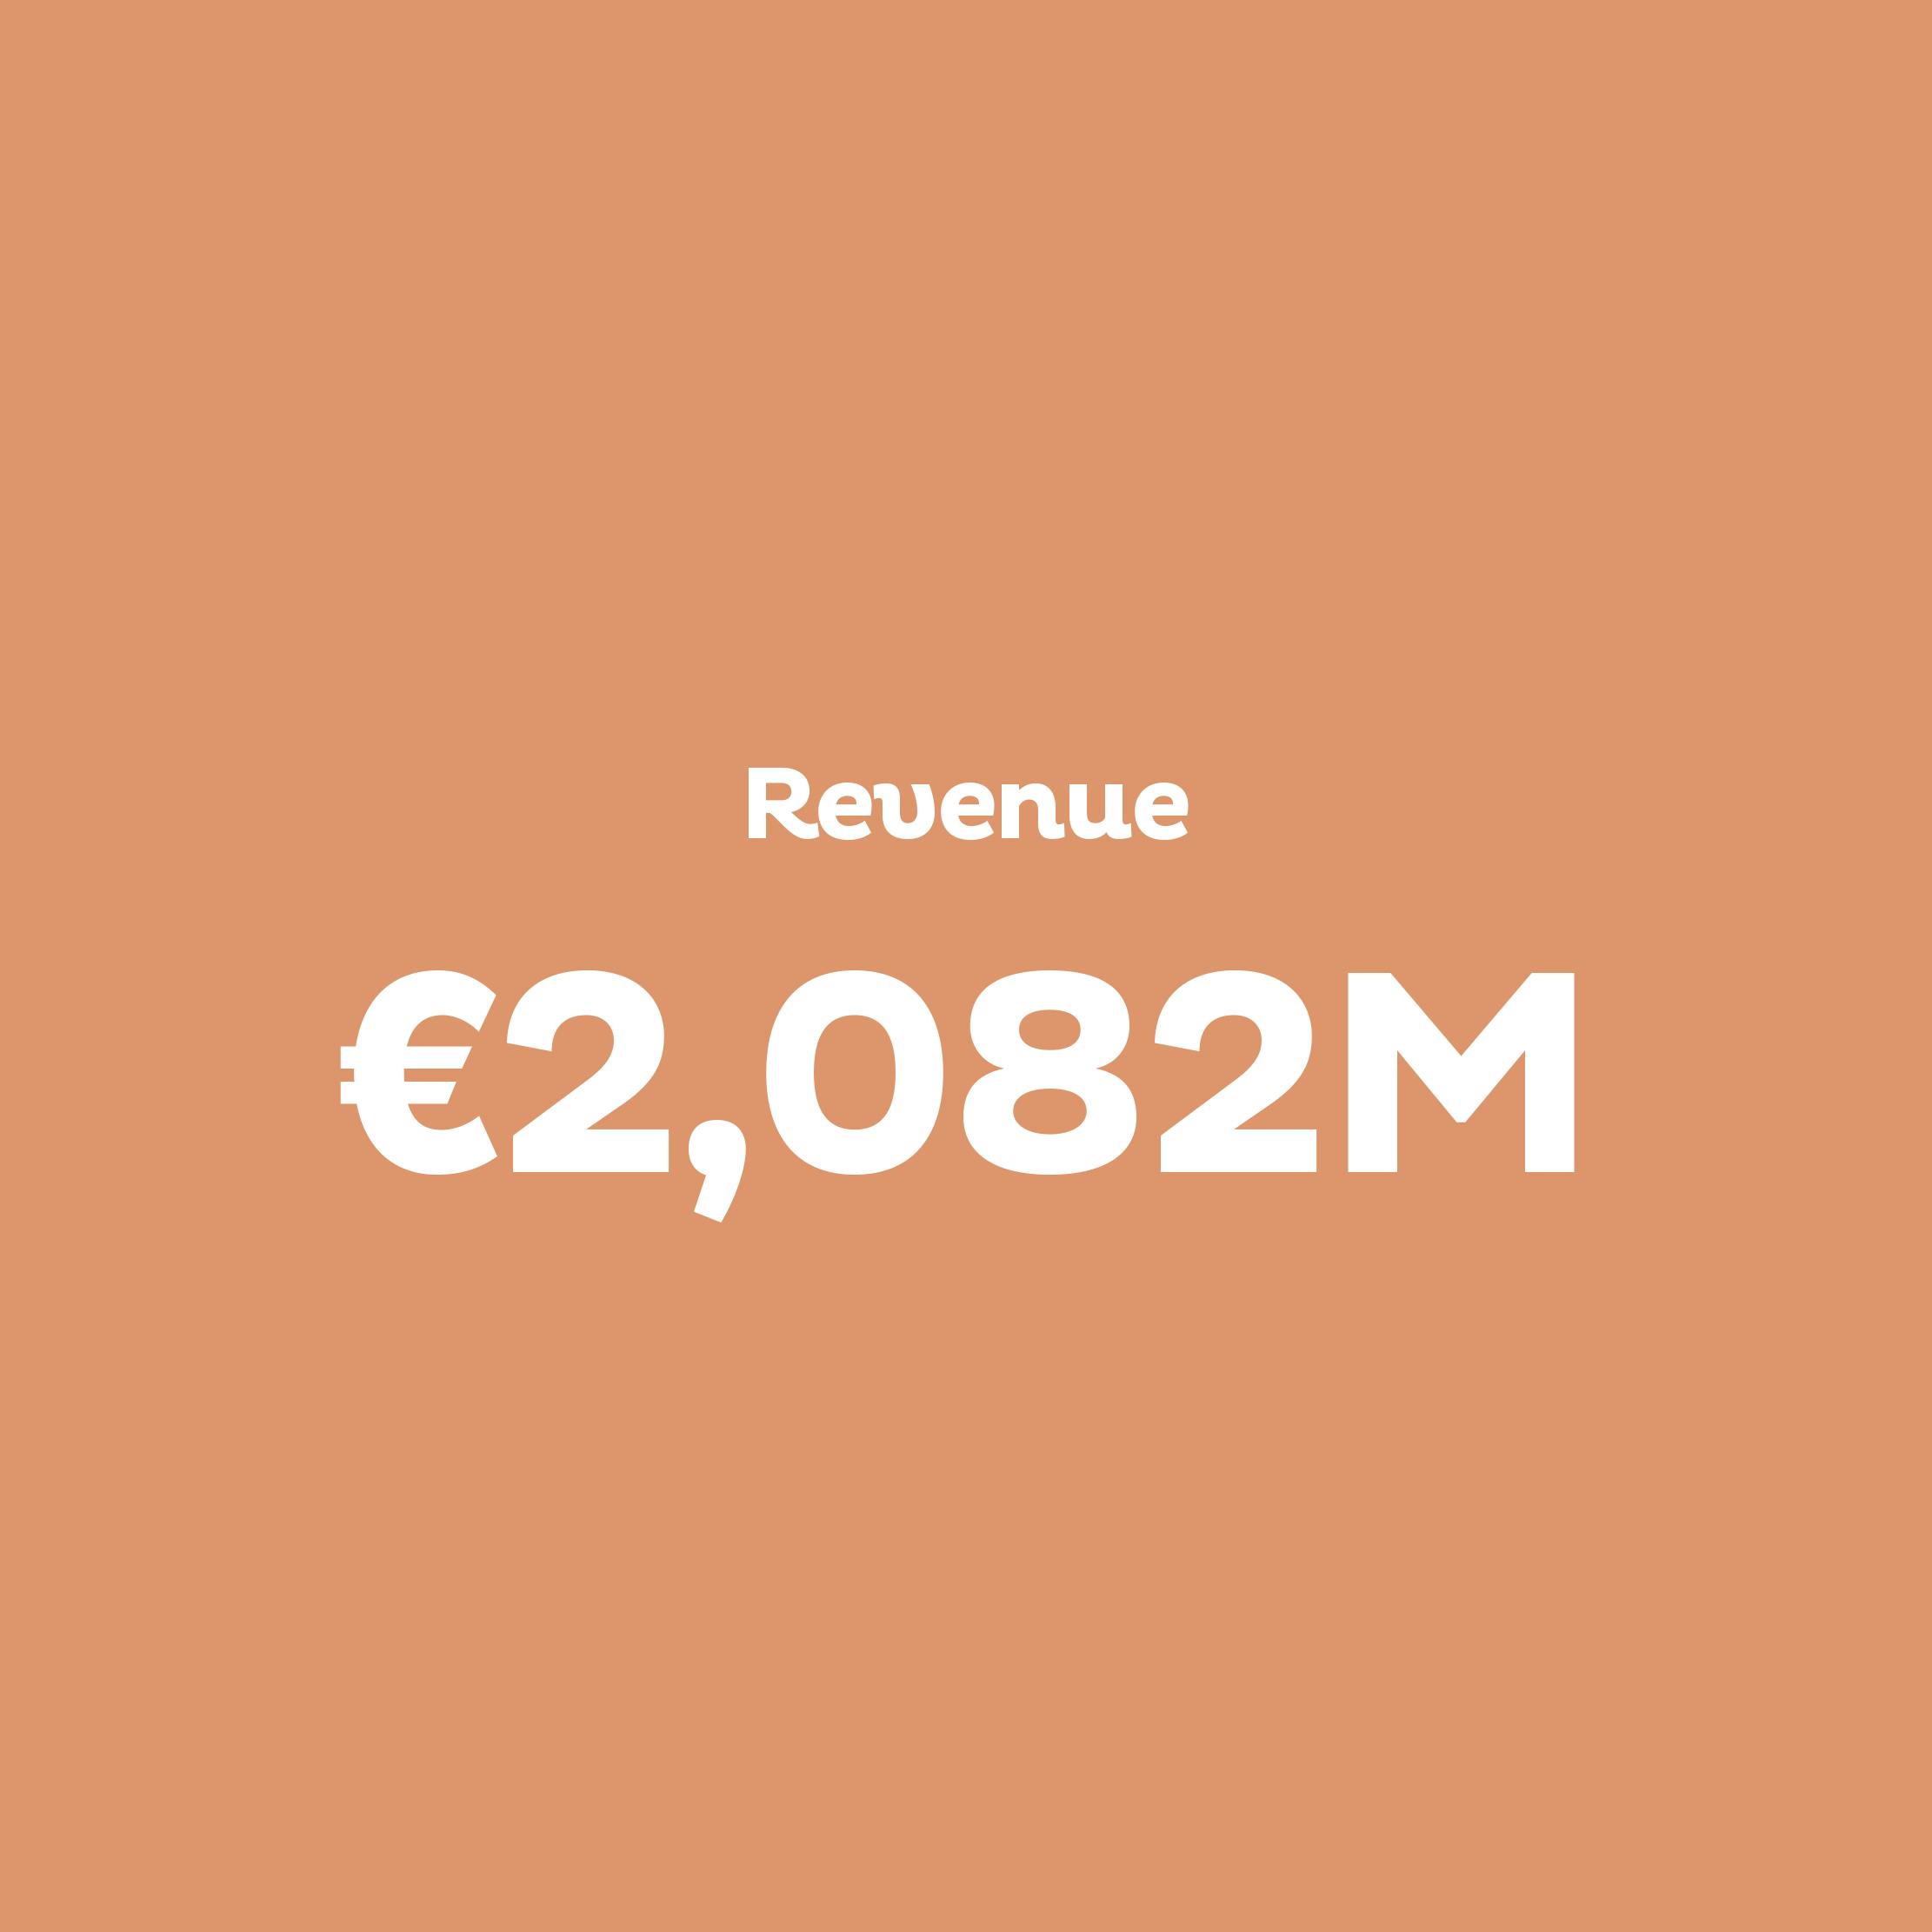 Revenue: €2,082M